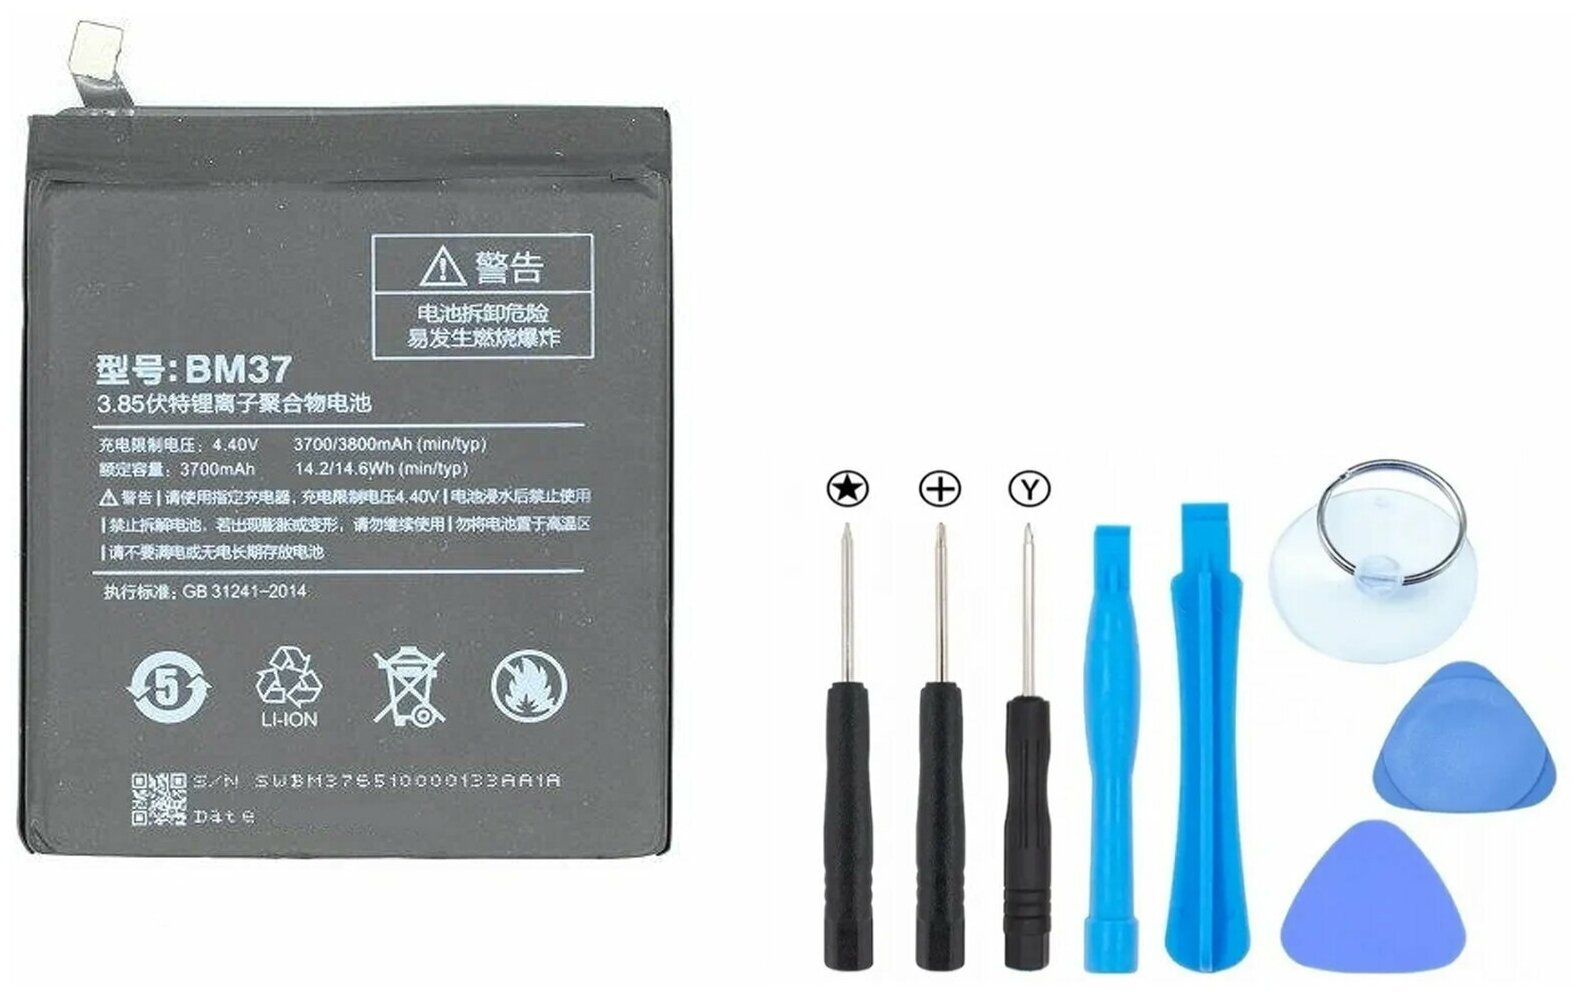 Аккумулятор для Xiaomi Mi 5S Plus / BM37 АКБ / Батарея для Ми 5С Плюс + комплект инструментов, отвертки, лопатки, присоска, медиатор